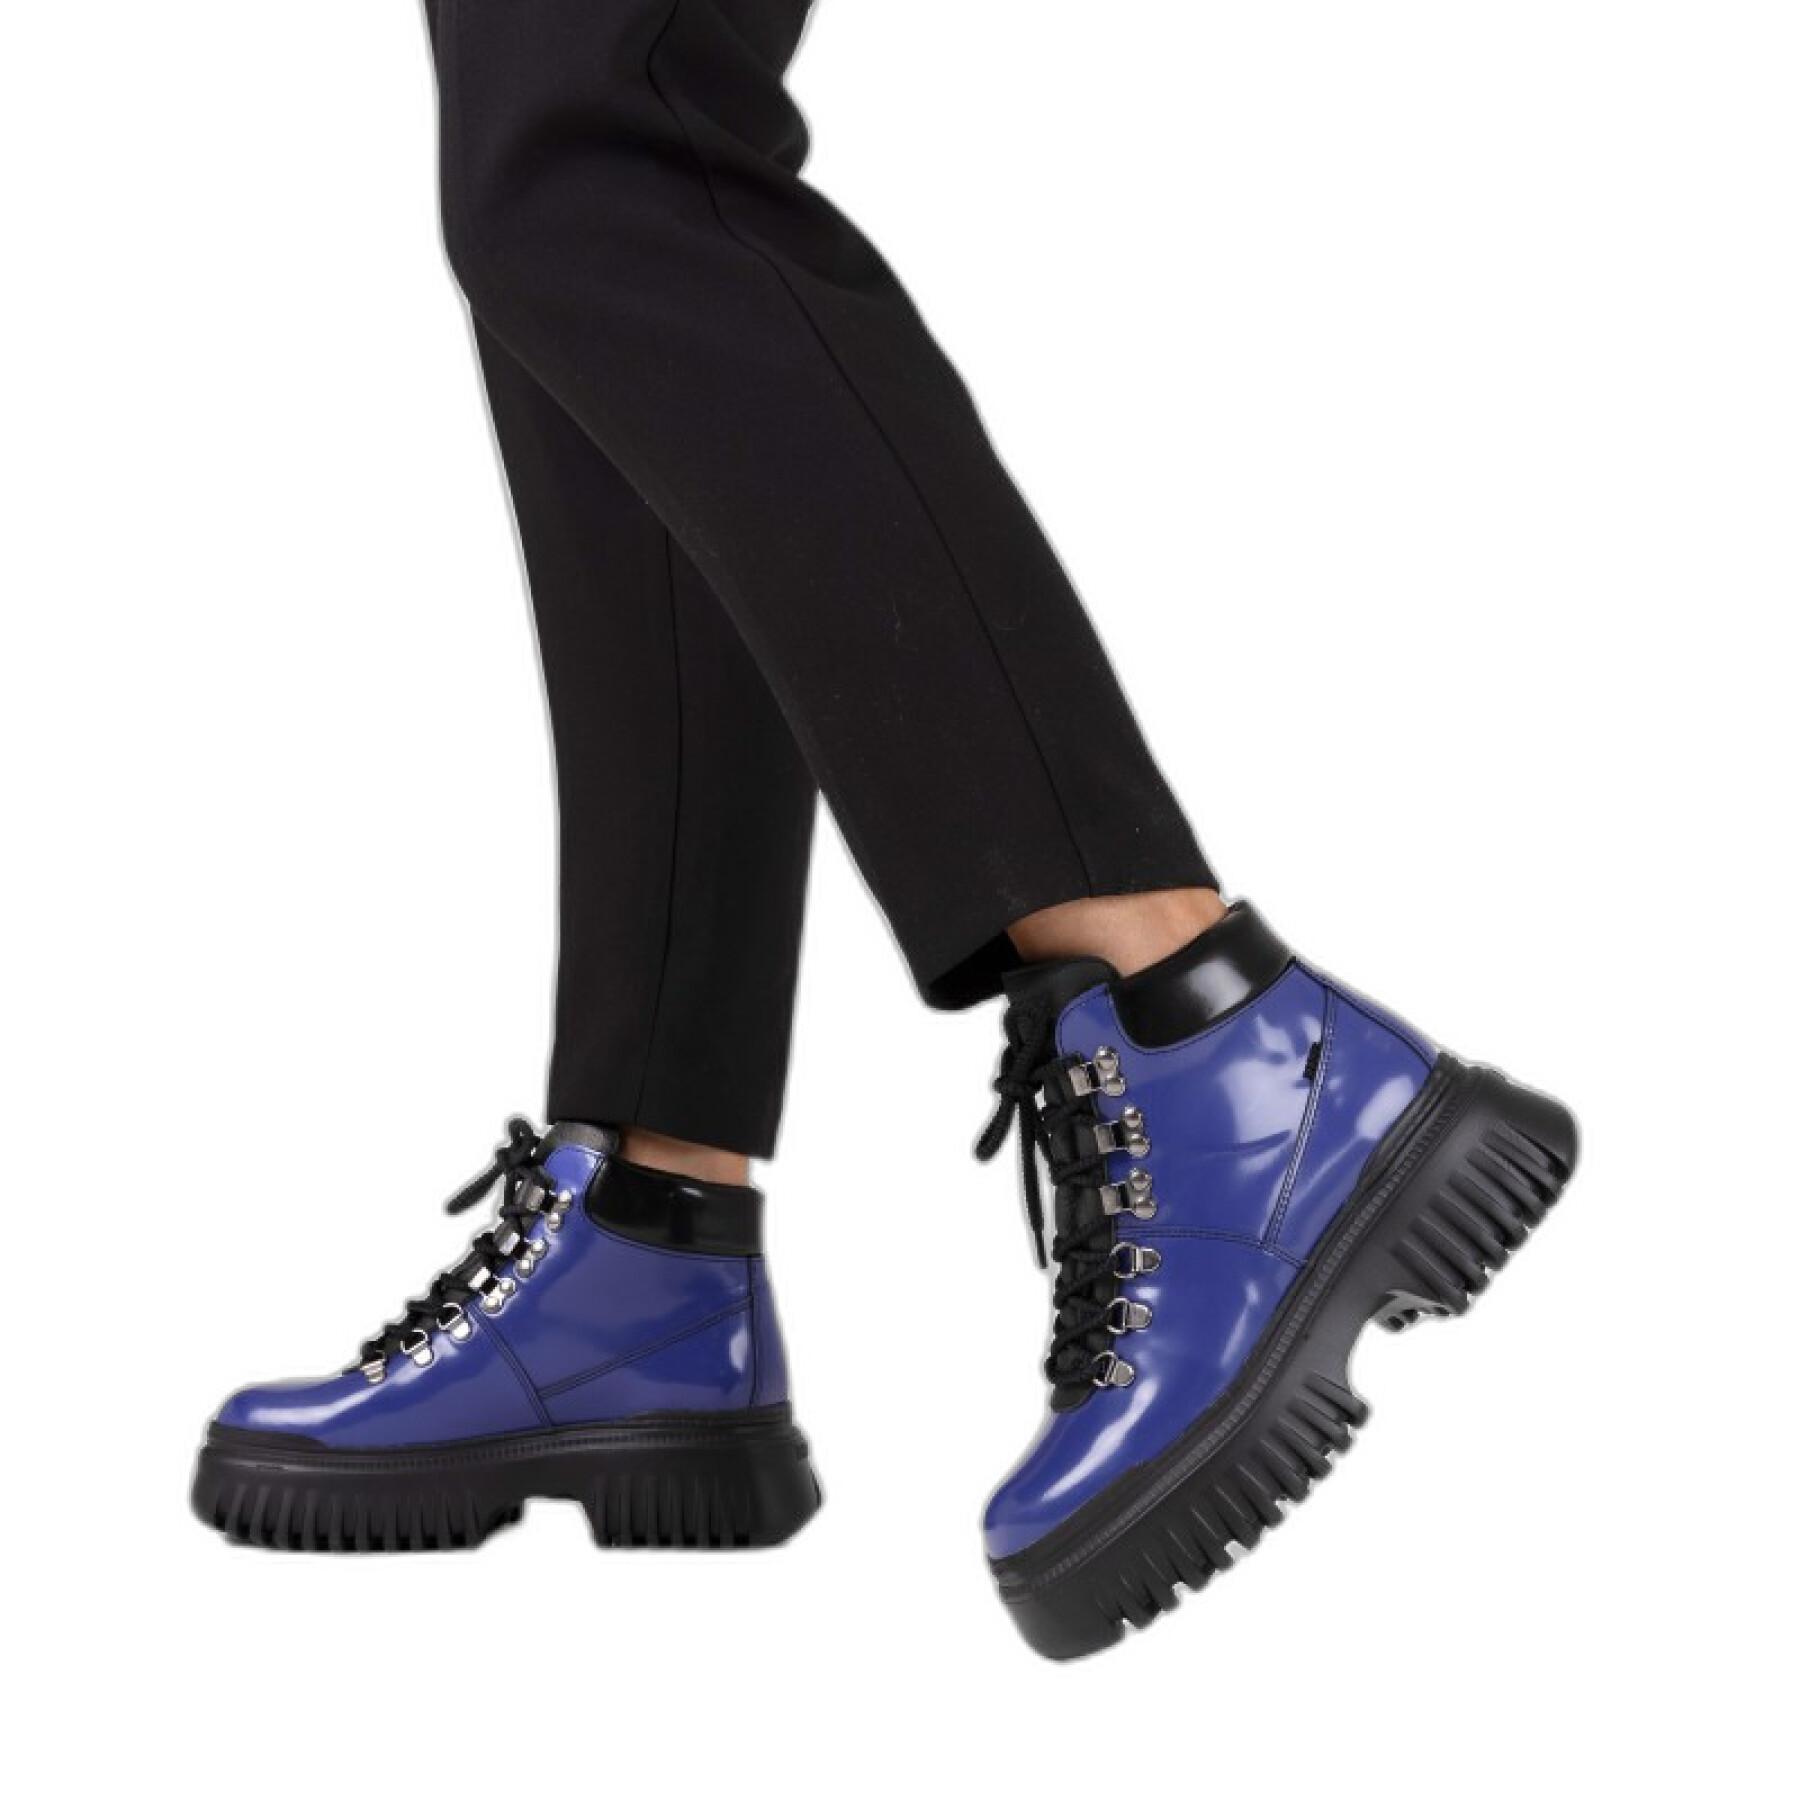 Women's boots Bronx Outdoor boot Mount Ann